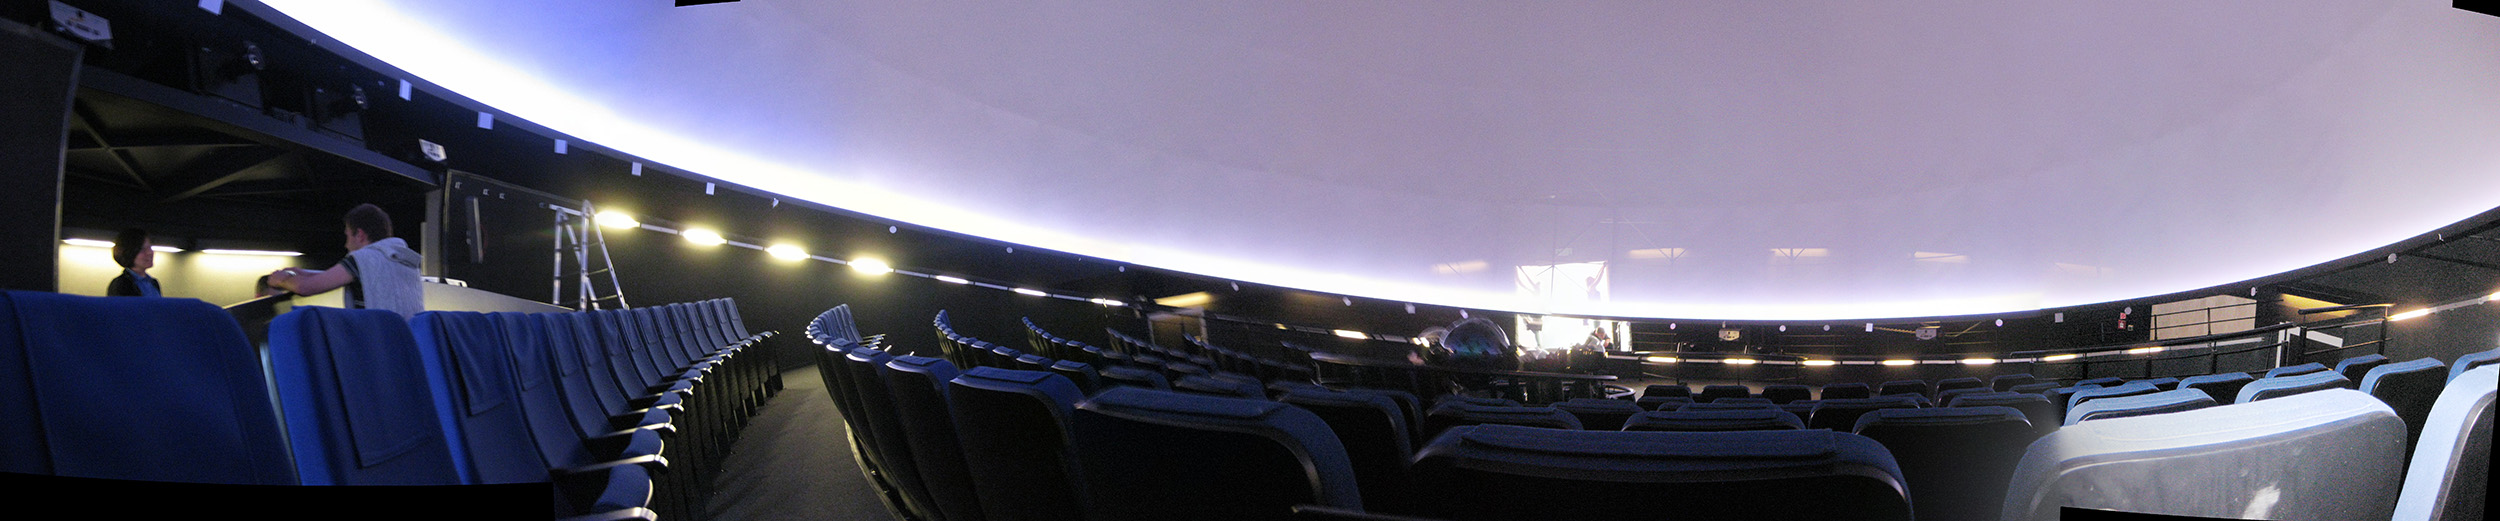 Interior of Copernicus planetarium, Warsaw